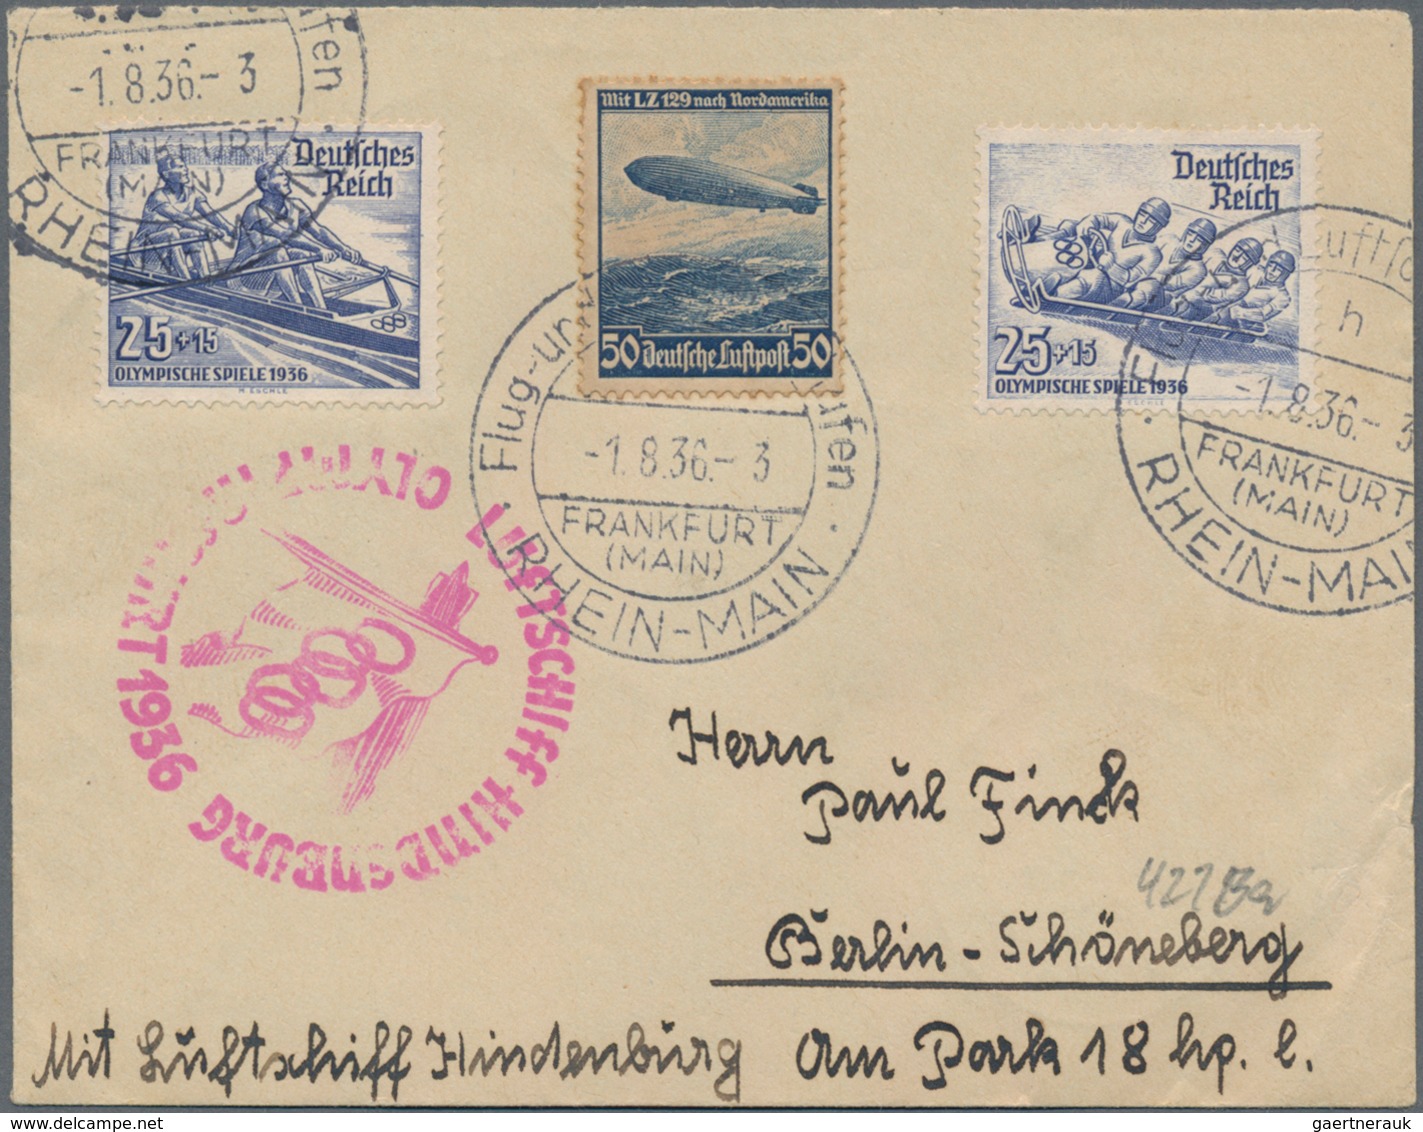 Thematik: Olympische Spiele / olympic games: 1936 - Garmisch-Partenkirchen, hochwertige Spezialsamml